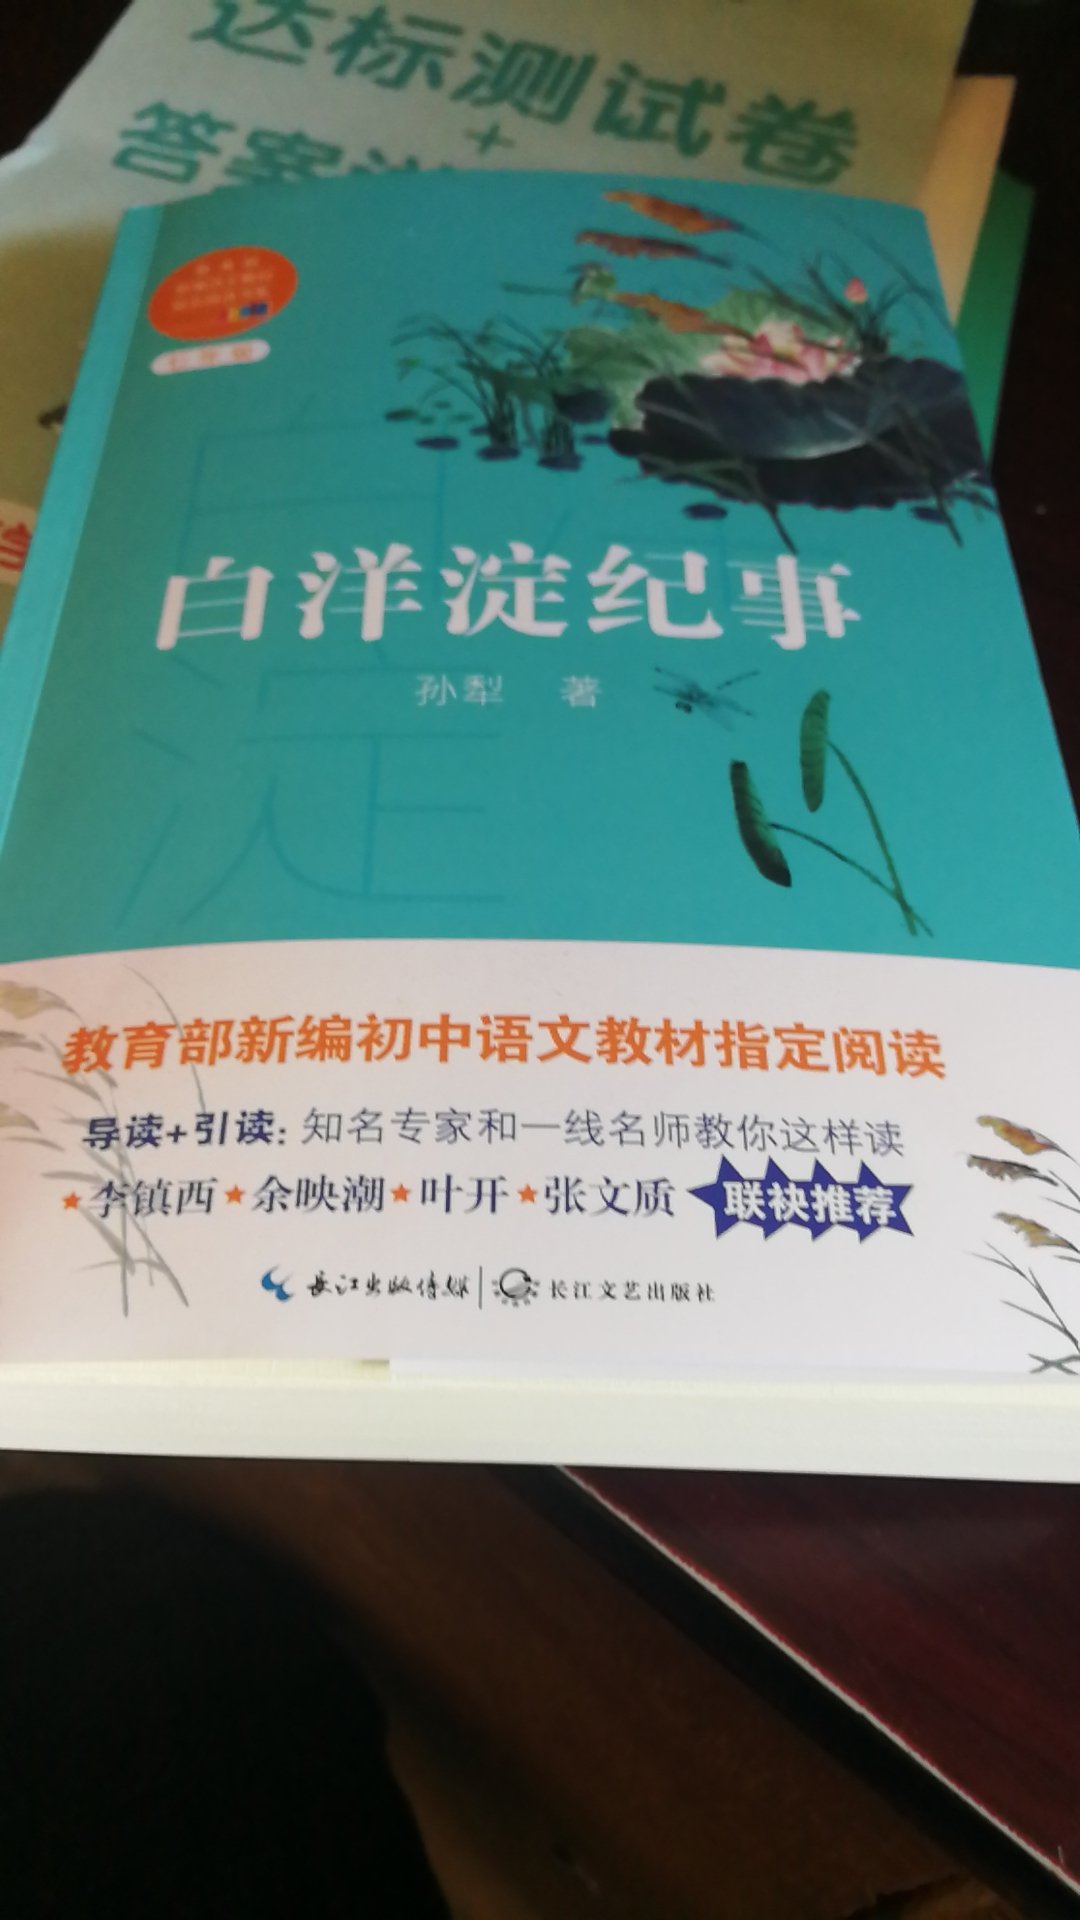 很不错的书，每天给上小学二年级的儿子读，让他知道中国的抗战历史，让他记住小~这帮龟儿子在中国犯下的罪行！物流给力！小哥服务好！